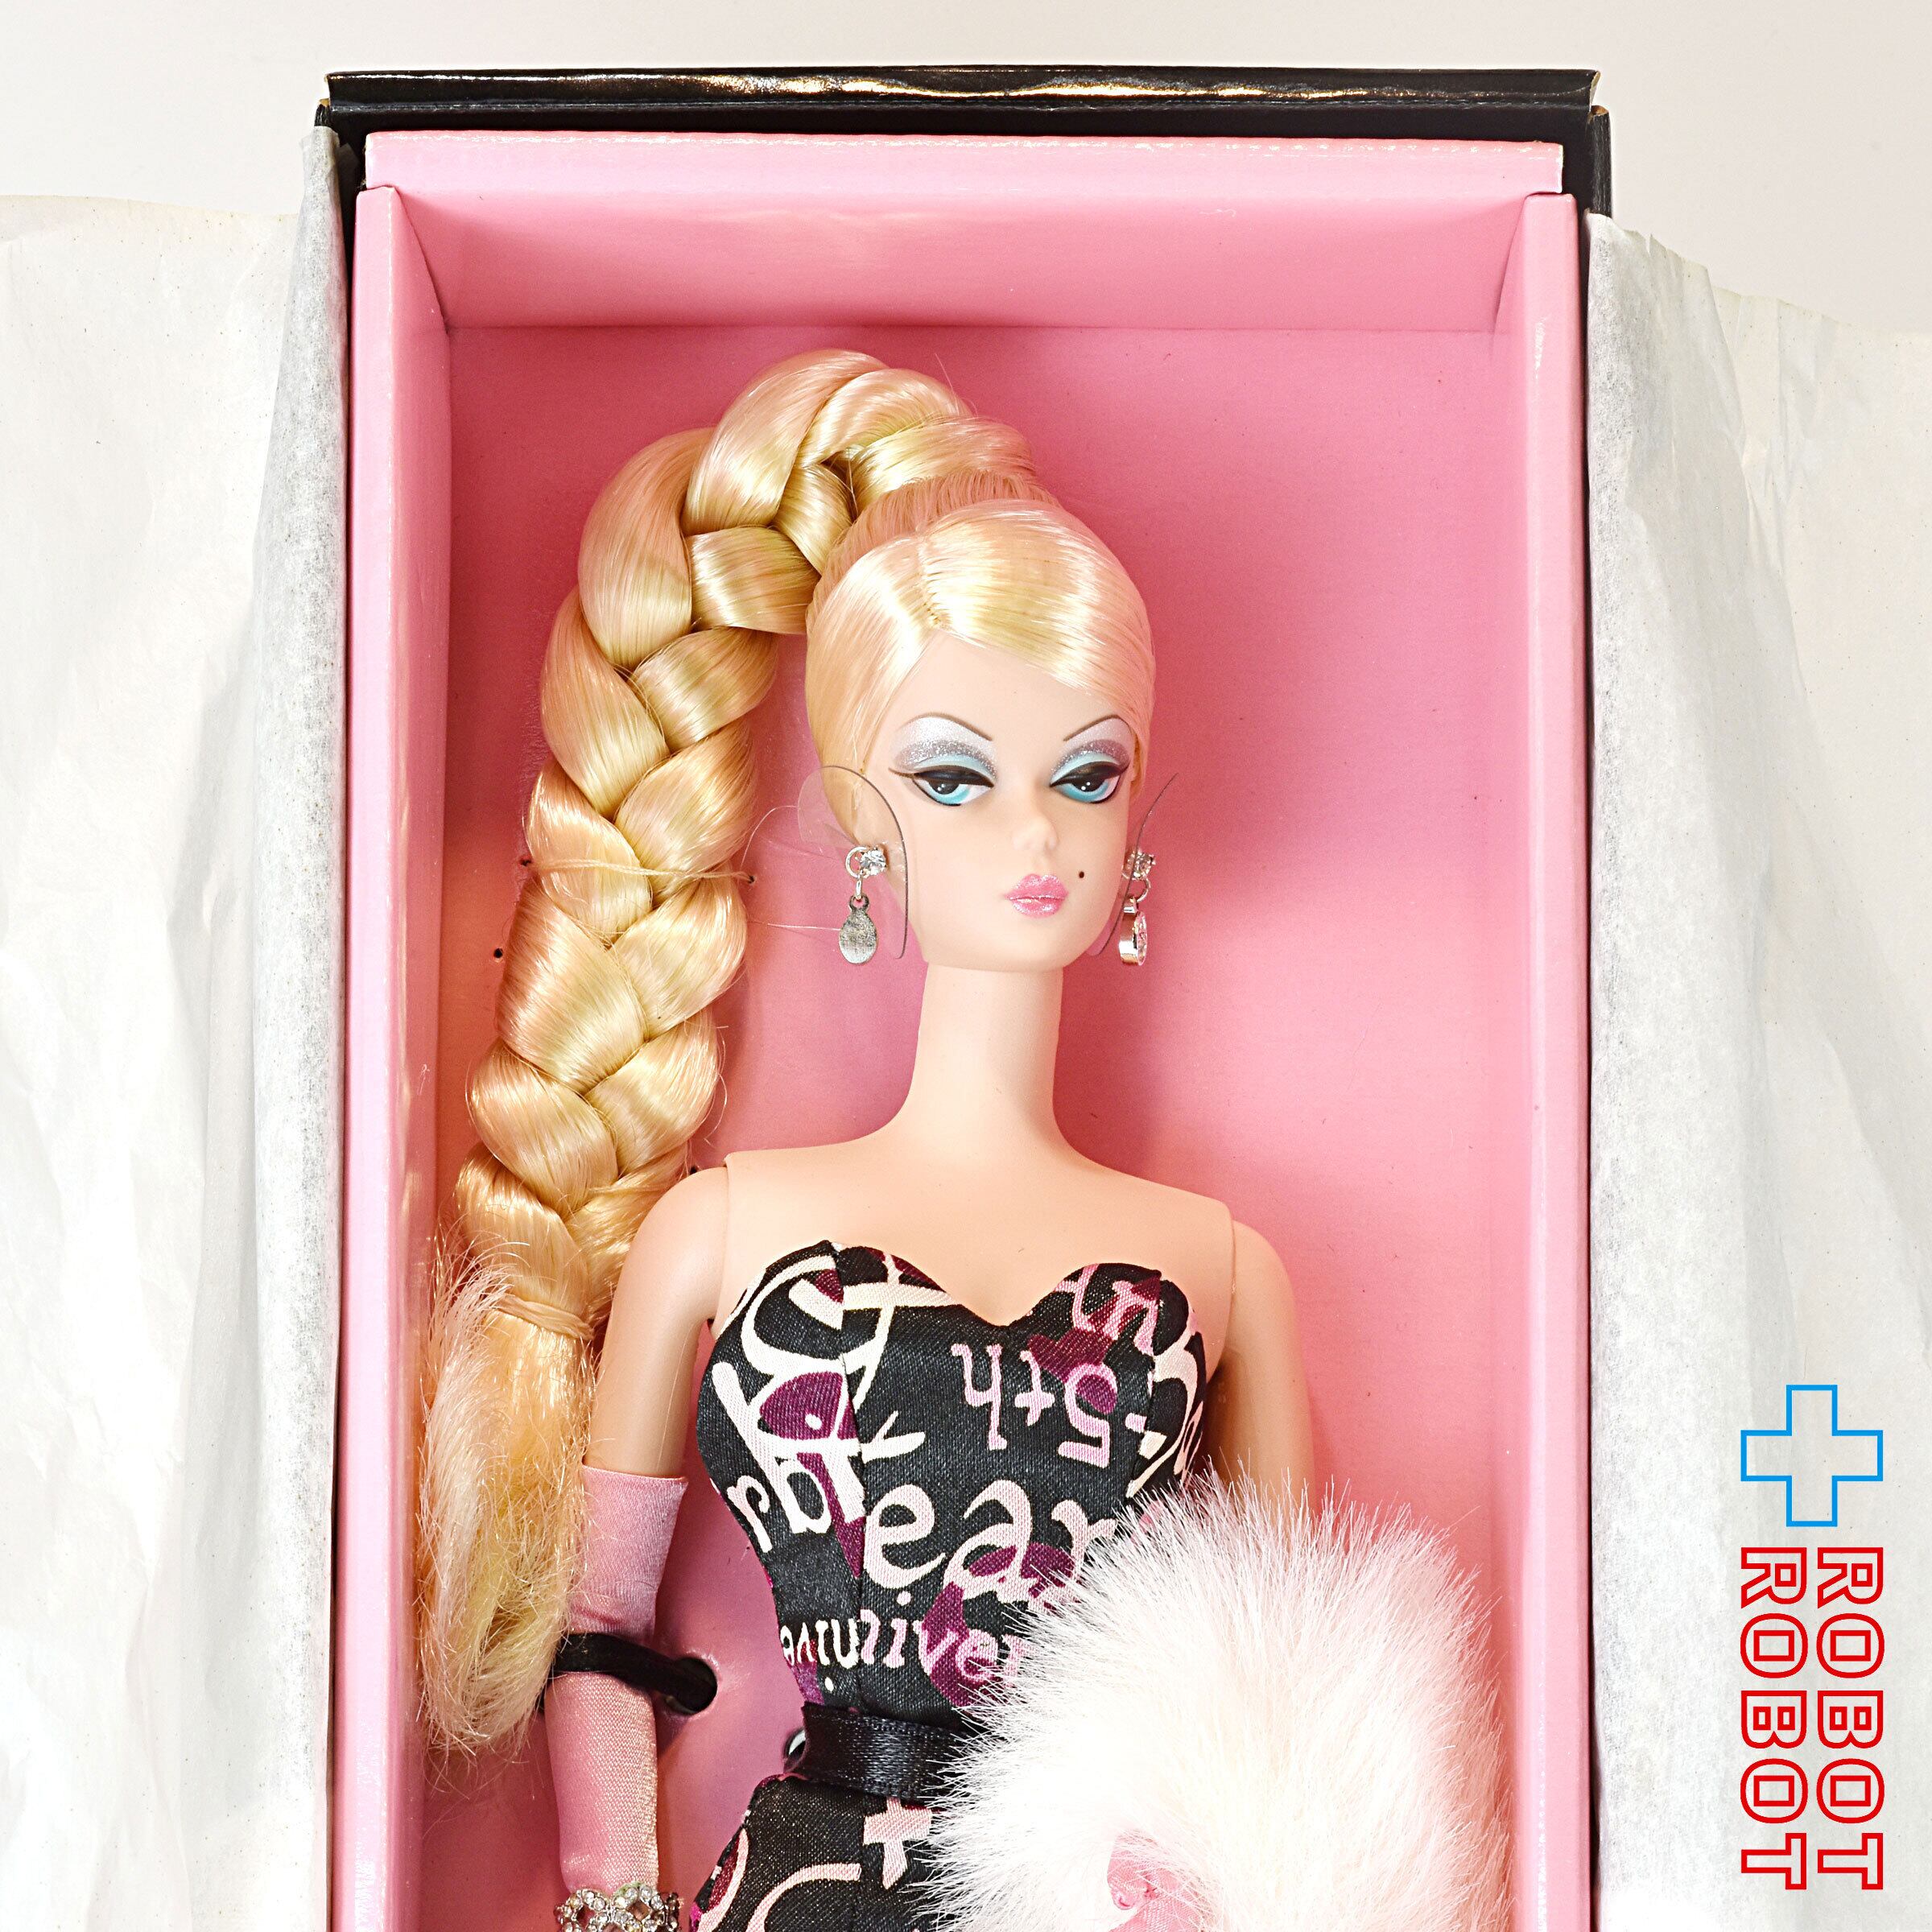 Barbie(バービー) Living Room Doll Set ドール 人形 フィギュア